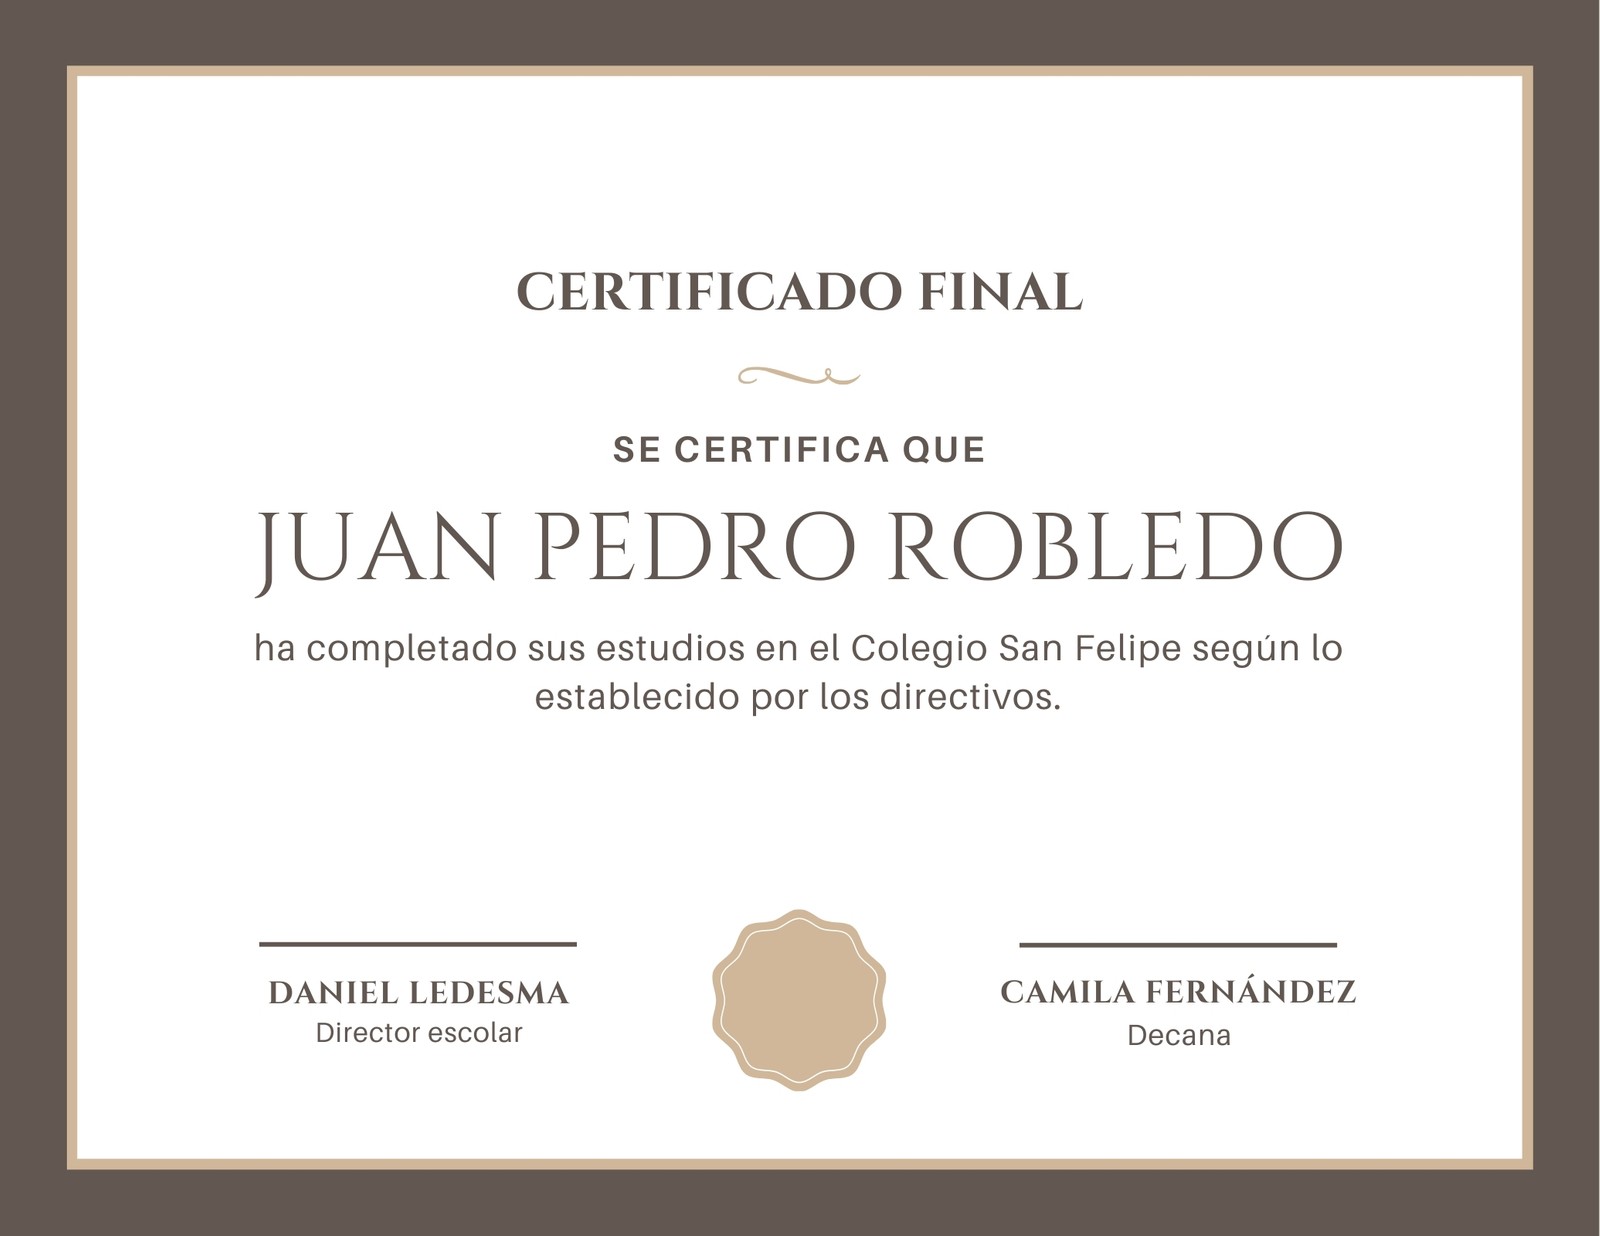 Borde Café Diploma de Colegio Certificado